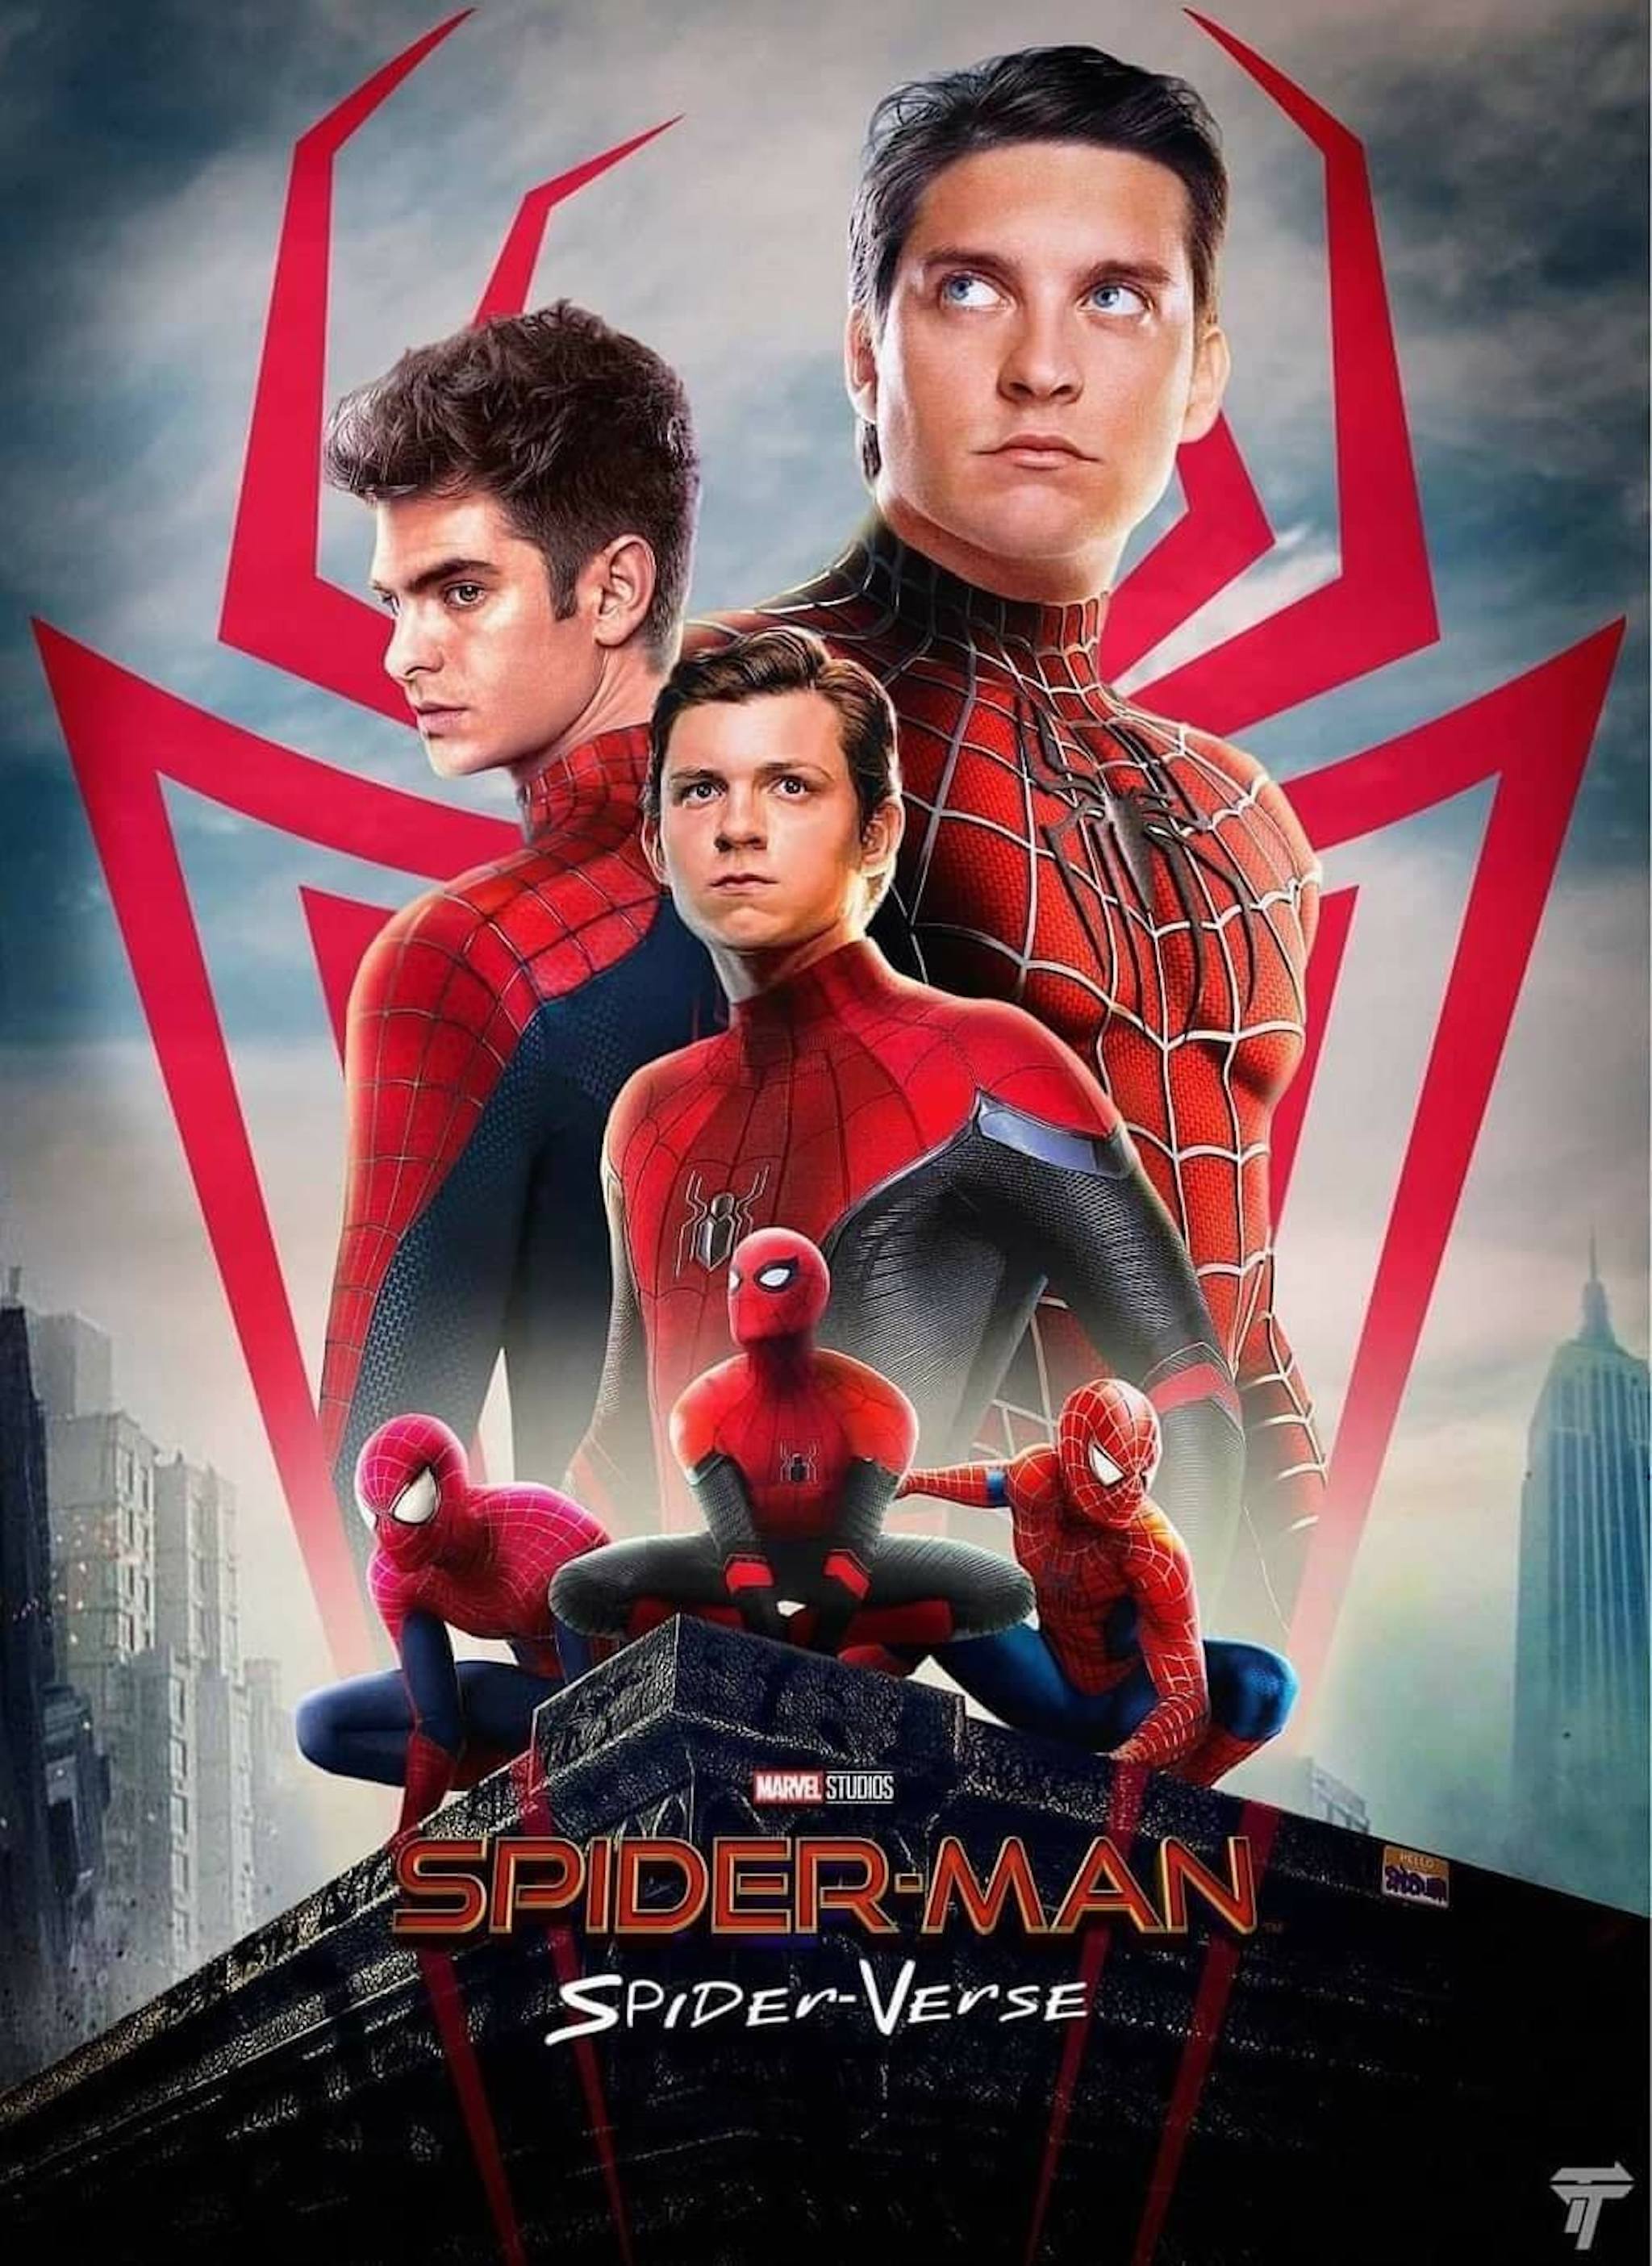 MCU, Spider Man, Tobey Maguire, Andrew Garfield: Bạn có yêu siêu anh hùng Nhện tuyệt vời này không? Hãy xem các hình ảnh của Tobey Maguire và Andrew Garfield trong vai trò Người Nhện và cảnh quay đầy kịch tính của họ trong vũ trụ Marvel Cinematic Universe (MCU).